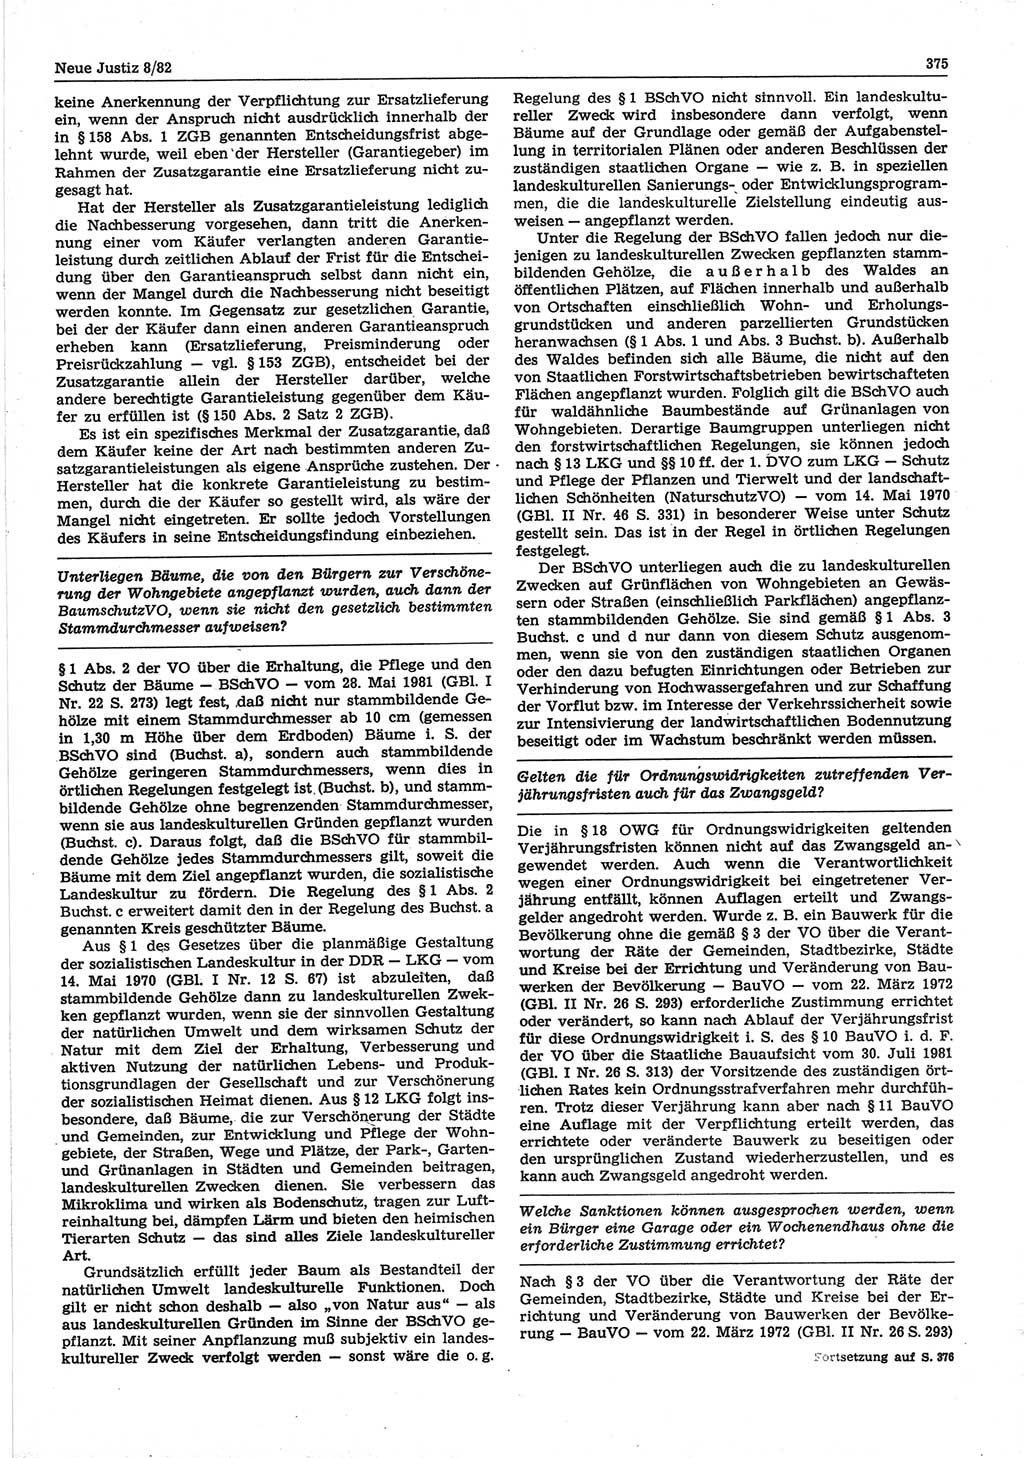 Neue Justiz (NJ), Zeitschrift für sozialistisches Recht und Gesetzlichkeit [Deutsche Demokratische Republik (DDR)], 36. Jahrgang 1982, Seite 375 (NJ DDR 1982, S. 375)